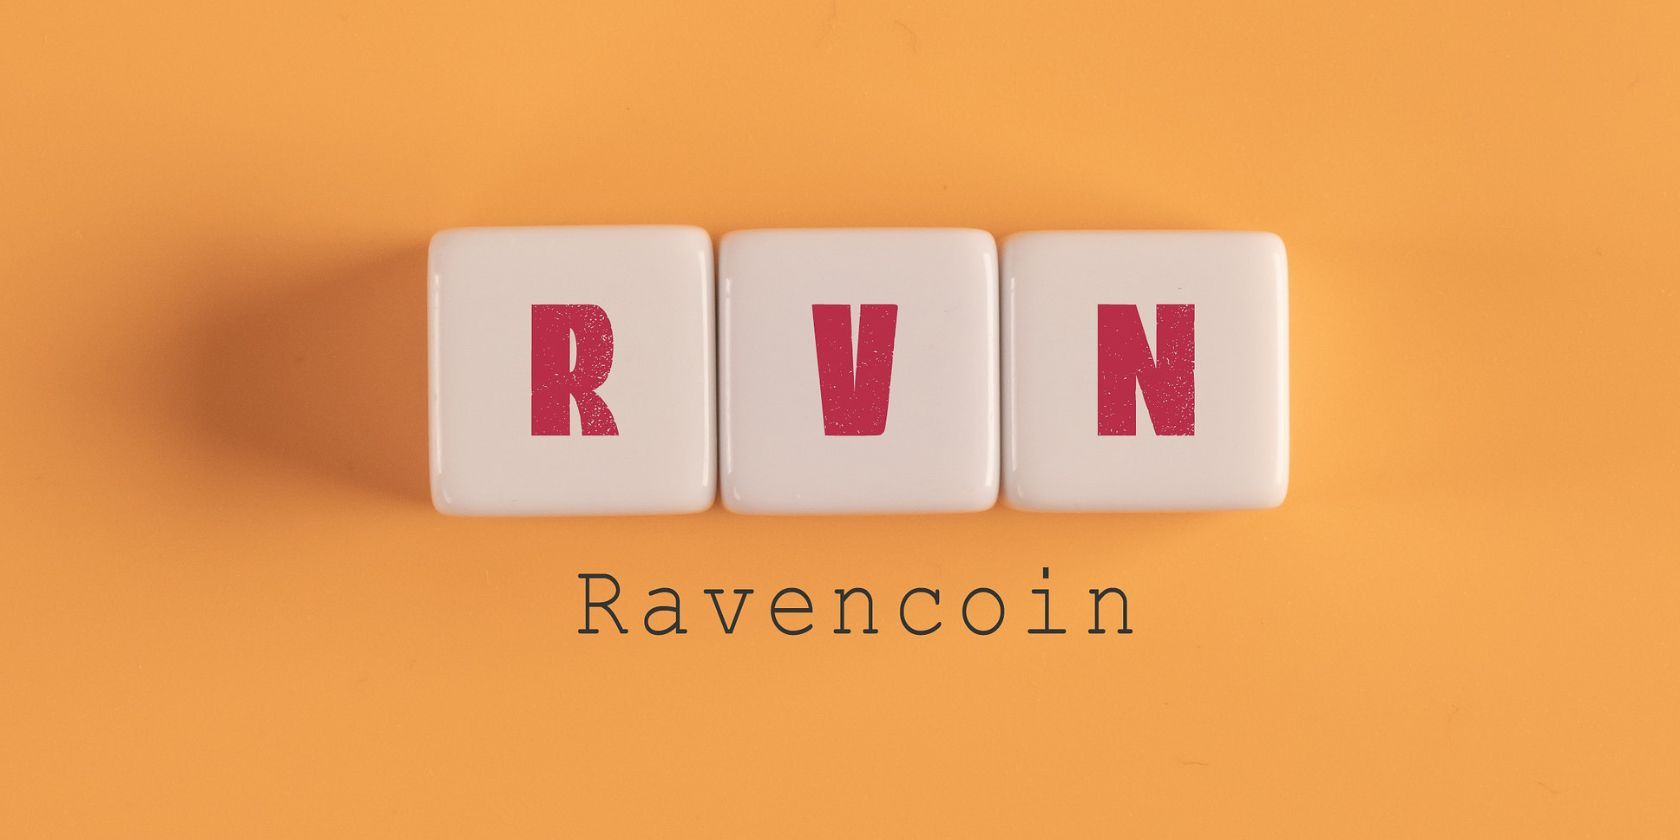 ravencoin je skraćeno koristeći scrabble blocks